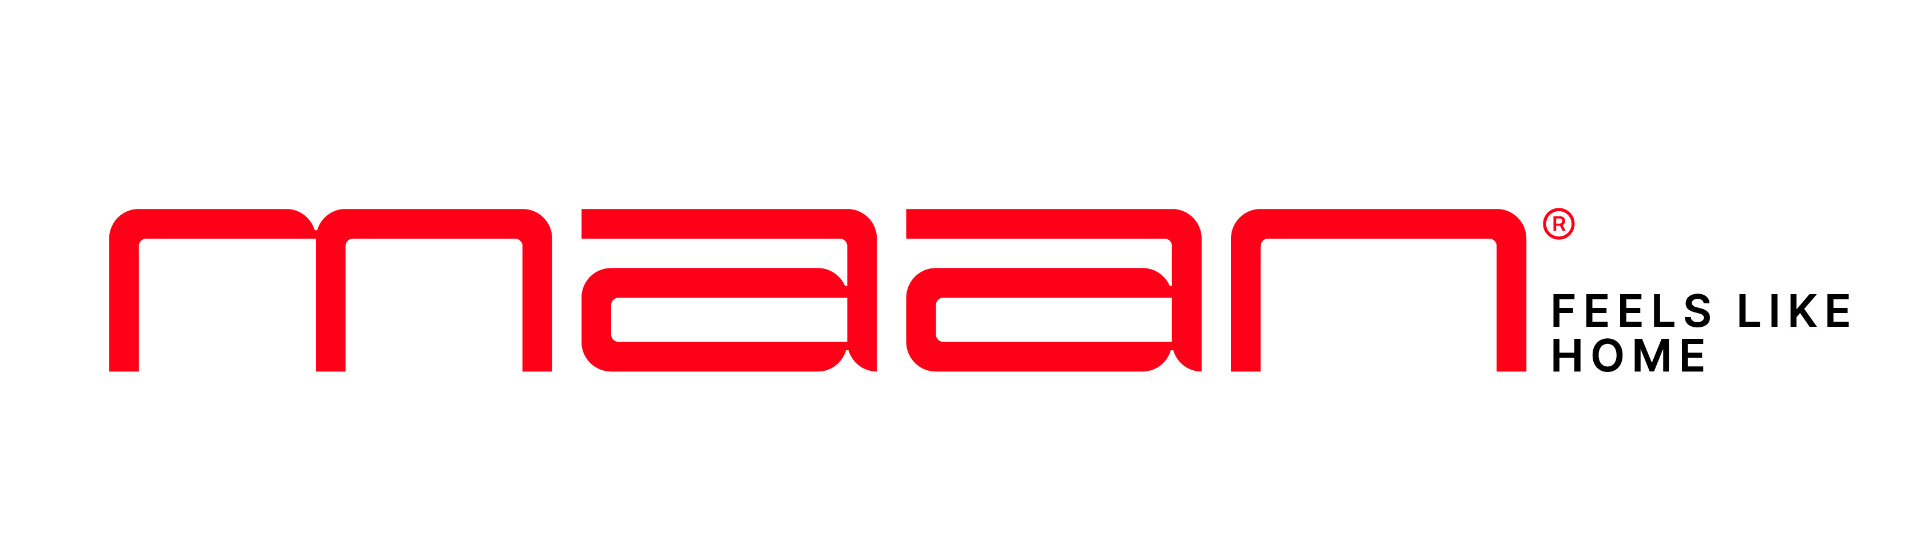 Maan_logoset